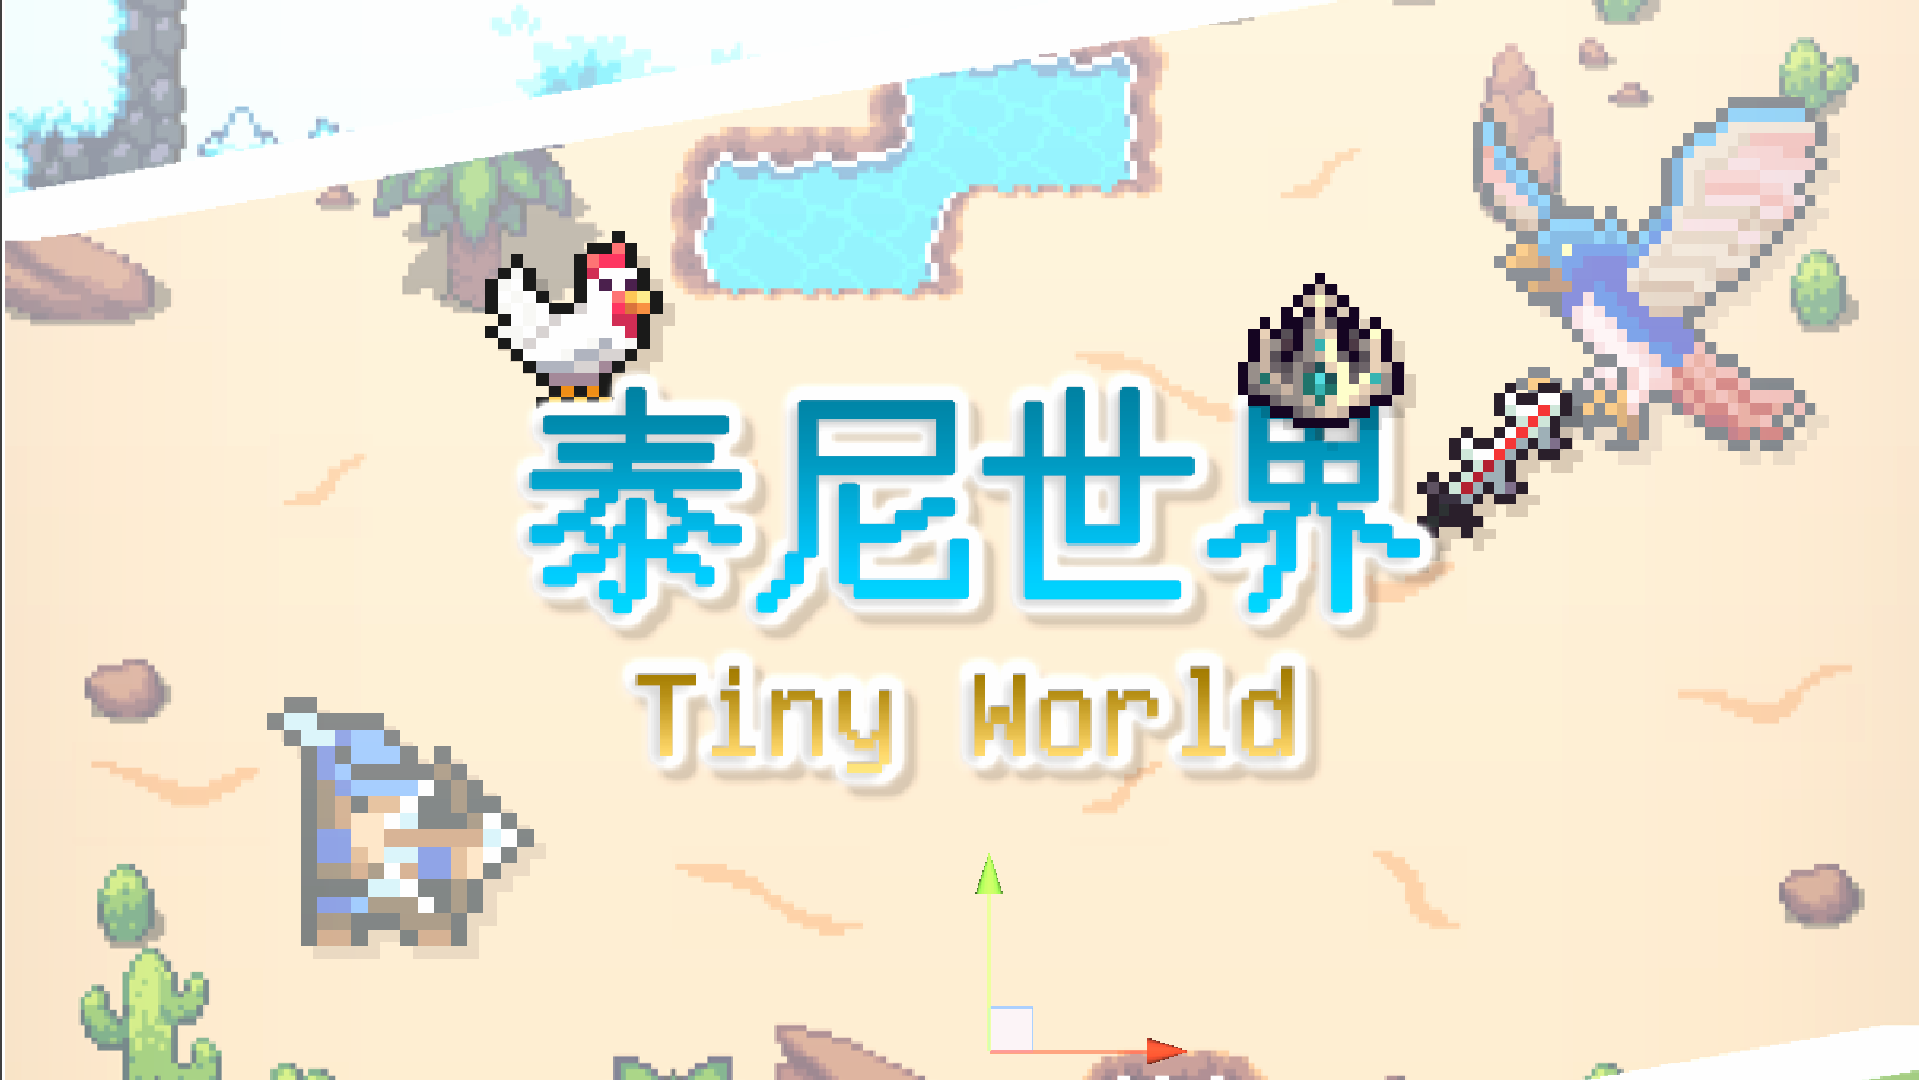 Banner of TinyWorld-Pixel art MMOGame 1.76